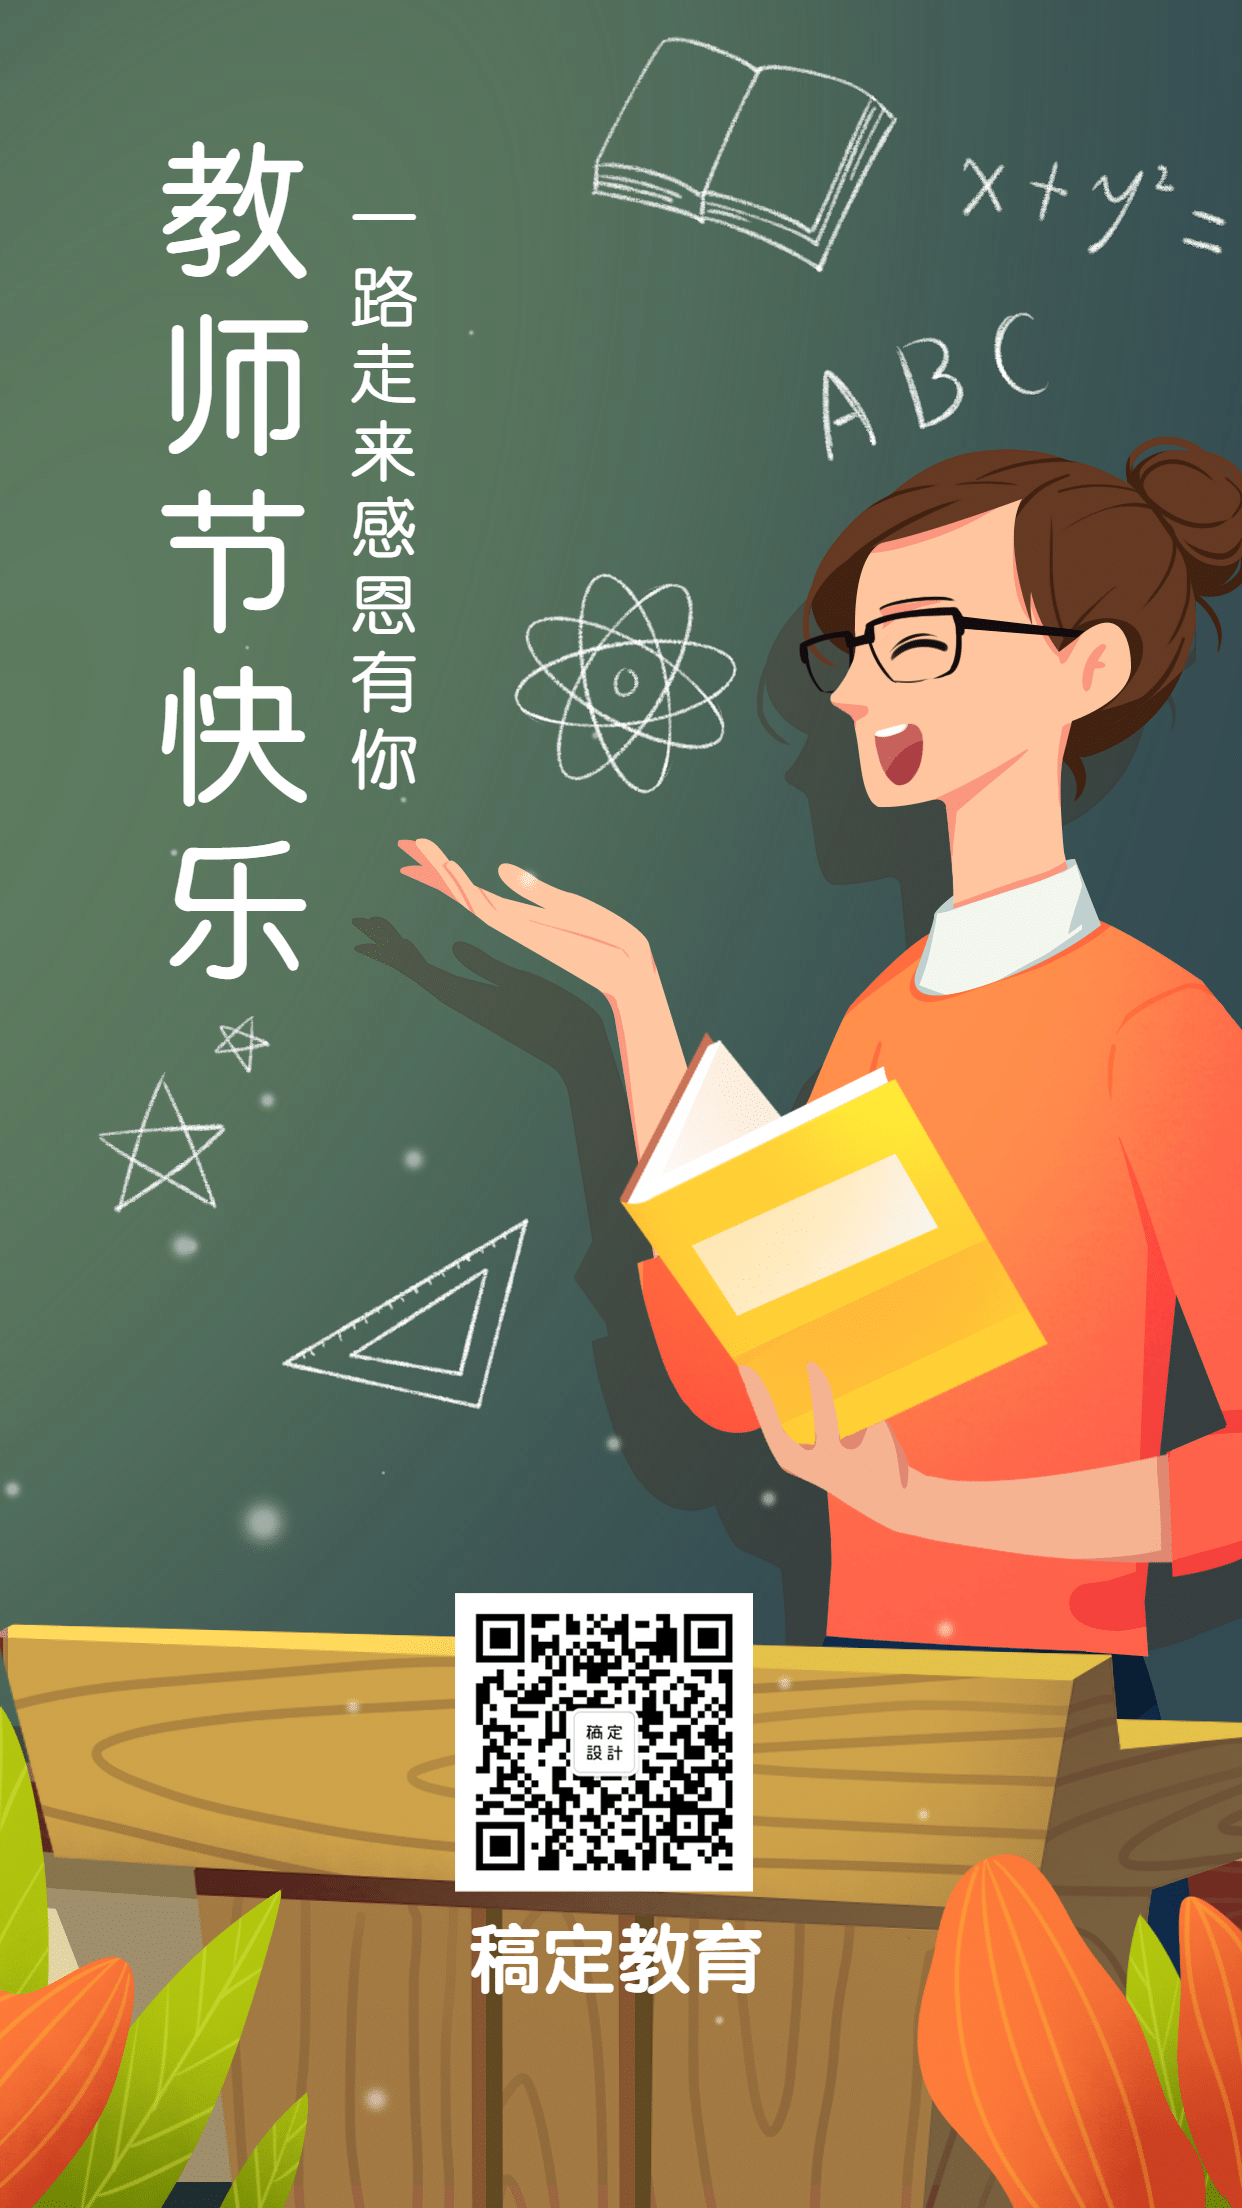 教师节快乐/营销/手机海报